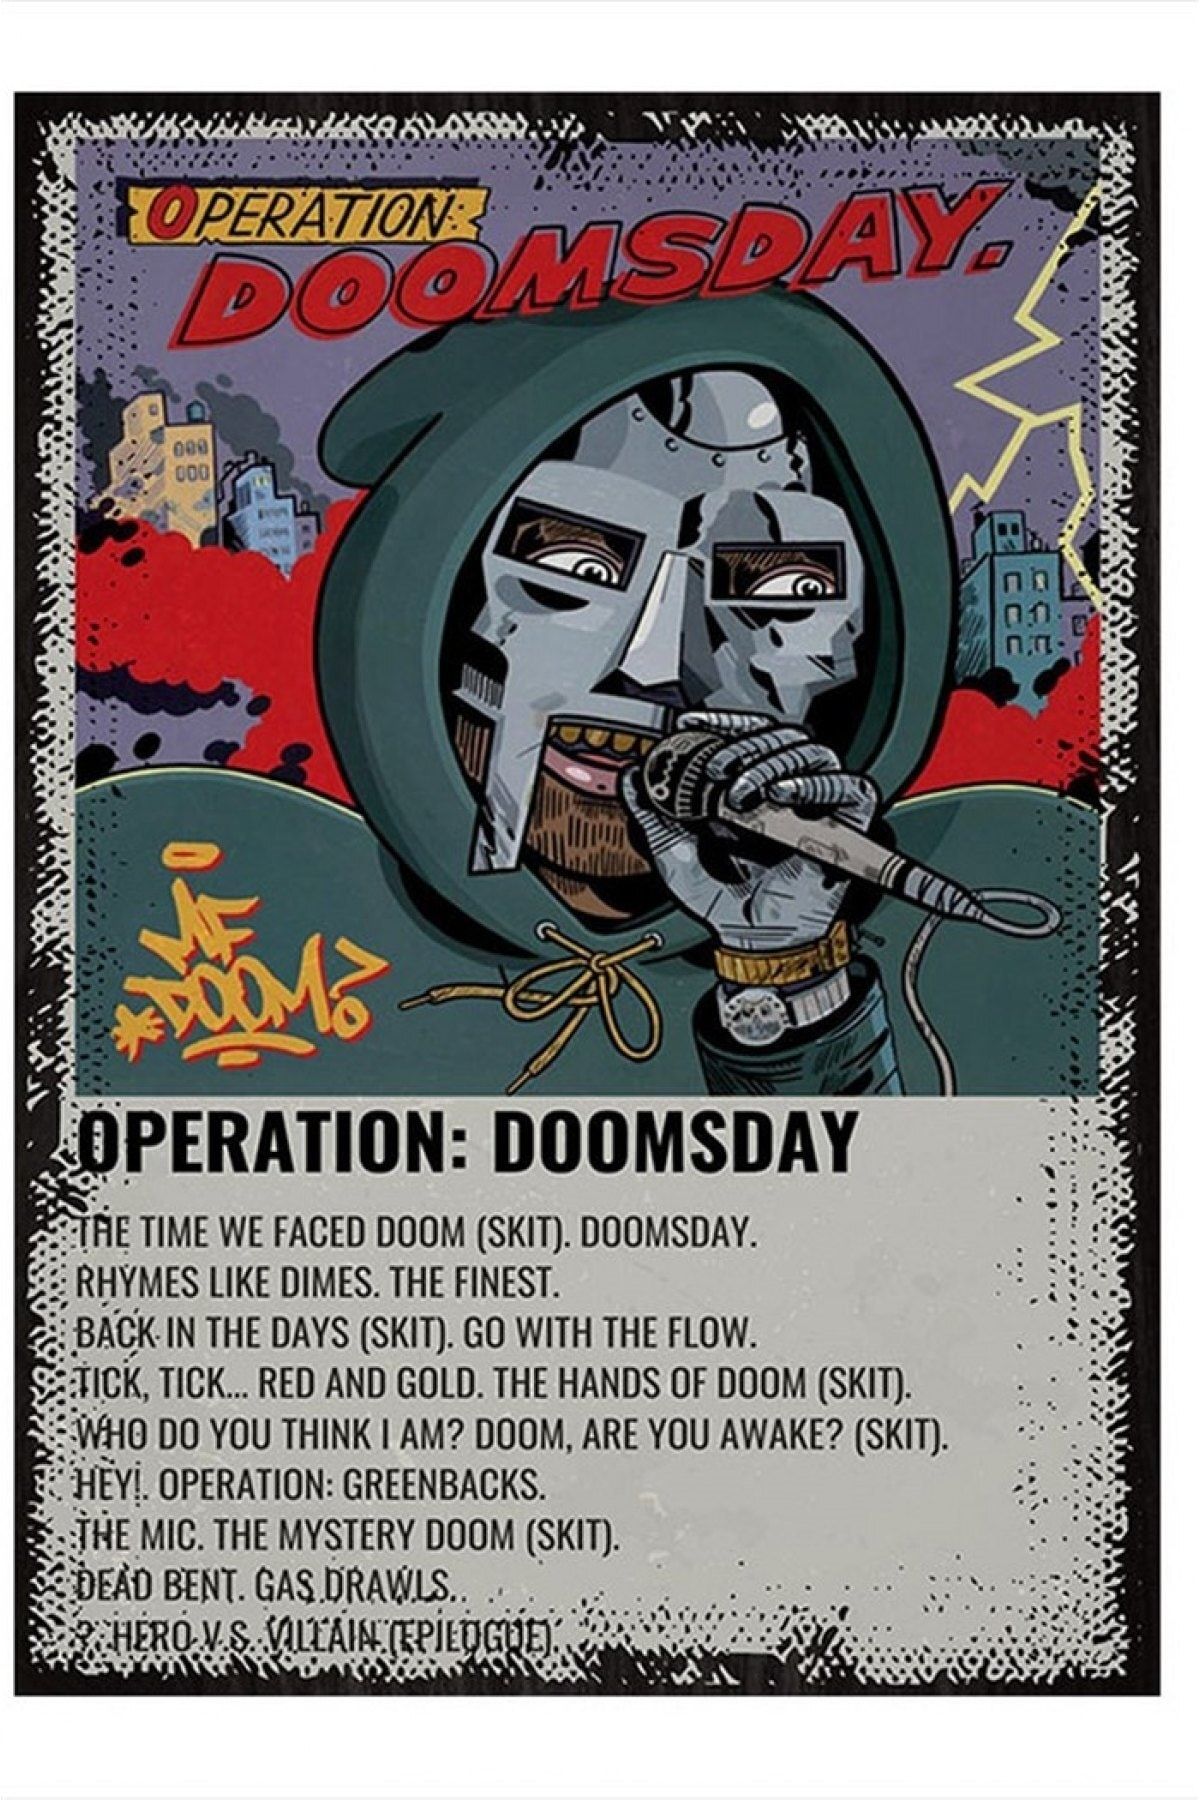 ekart Mf Doom Müzik Poster Desenli Mdf Tablo 15cmx 22cm